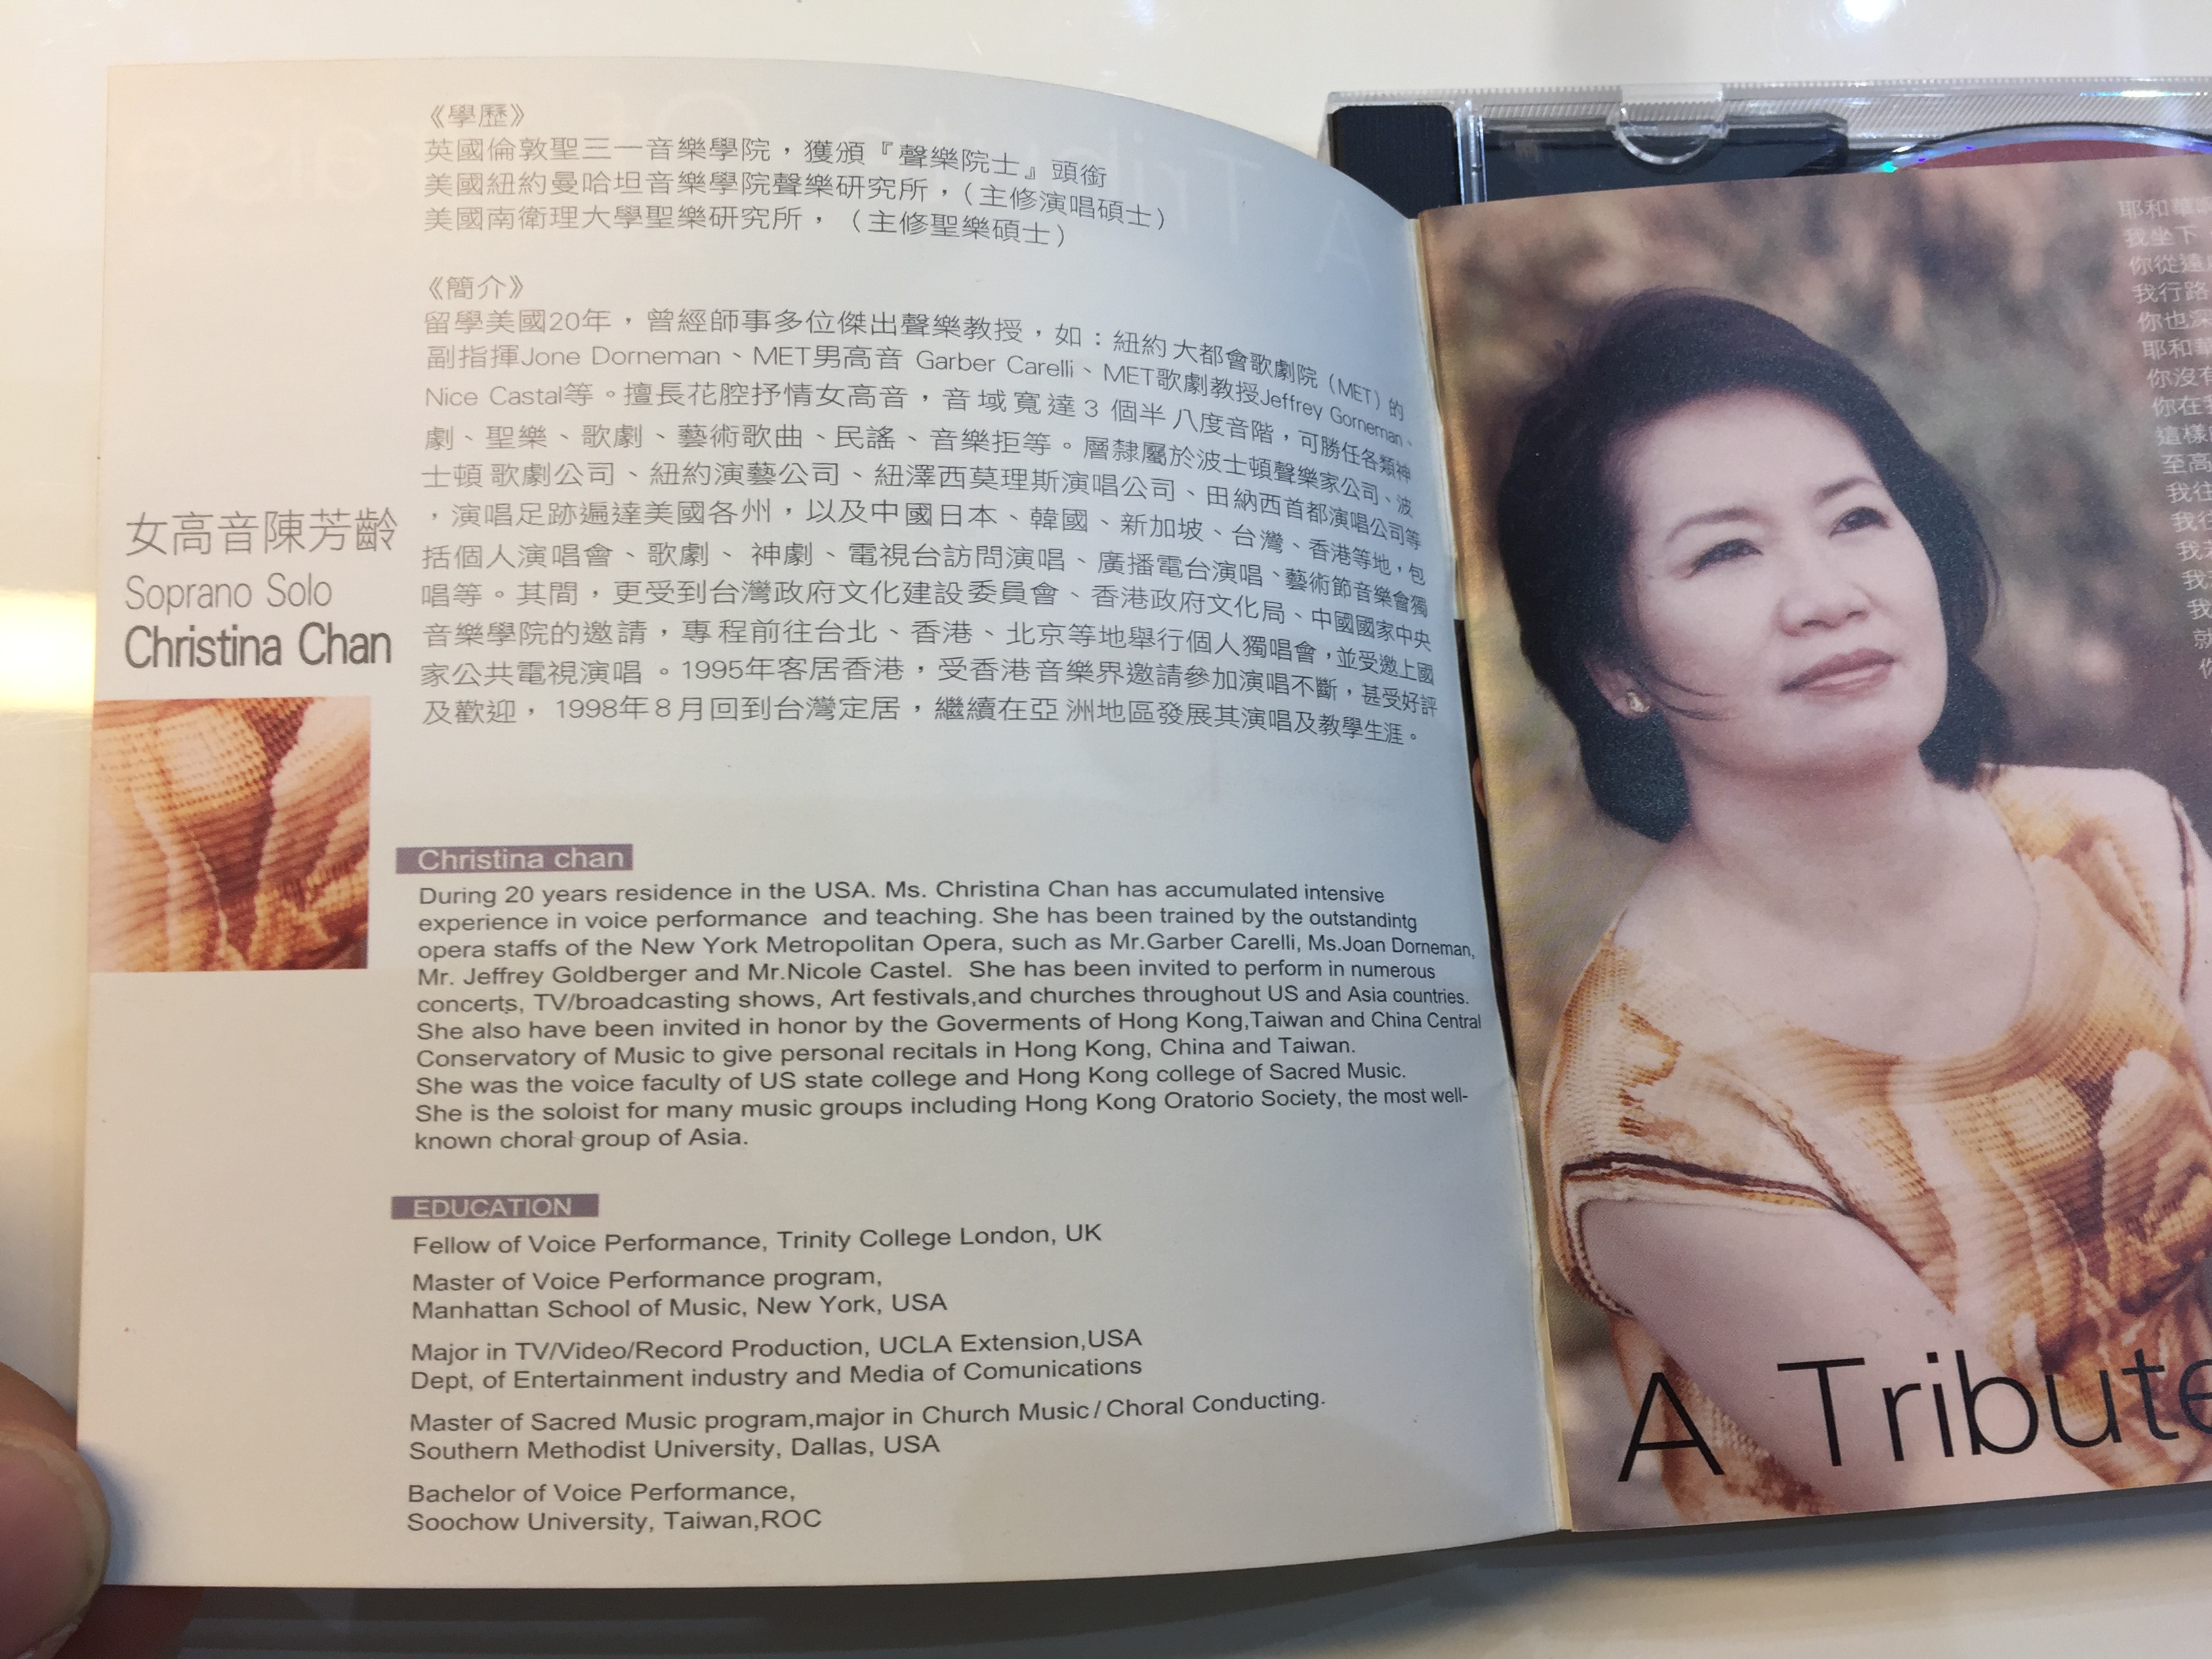 A Tribute of Praise - Soprano Solo Christina Chan 1